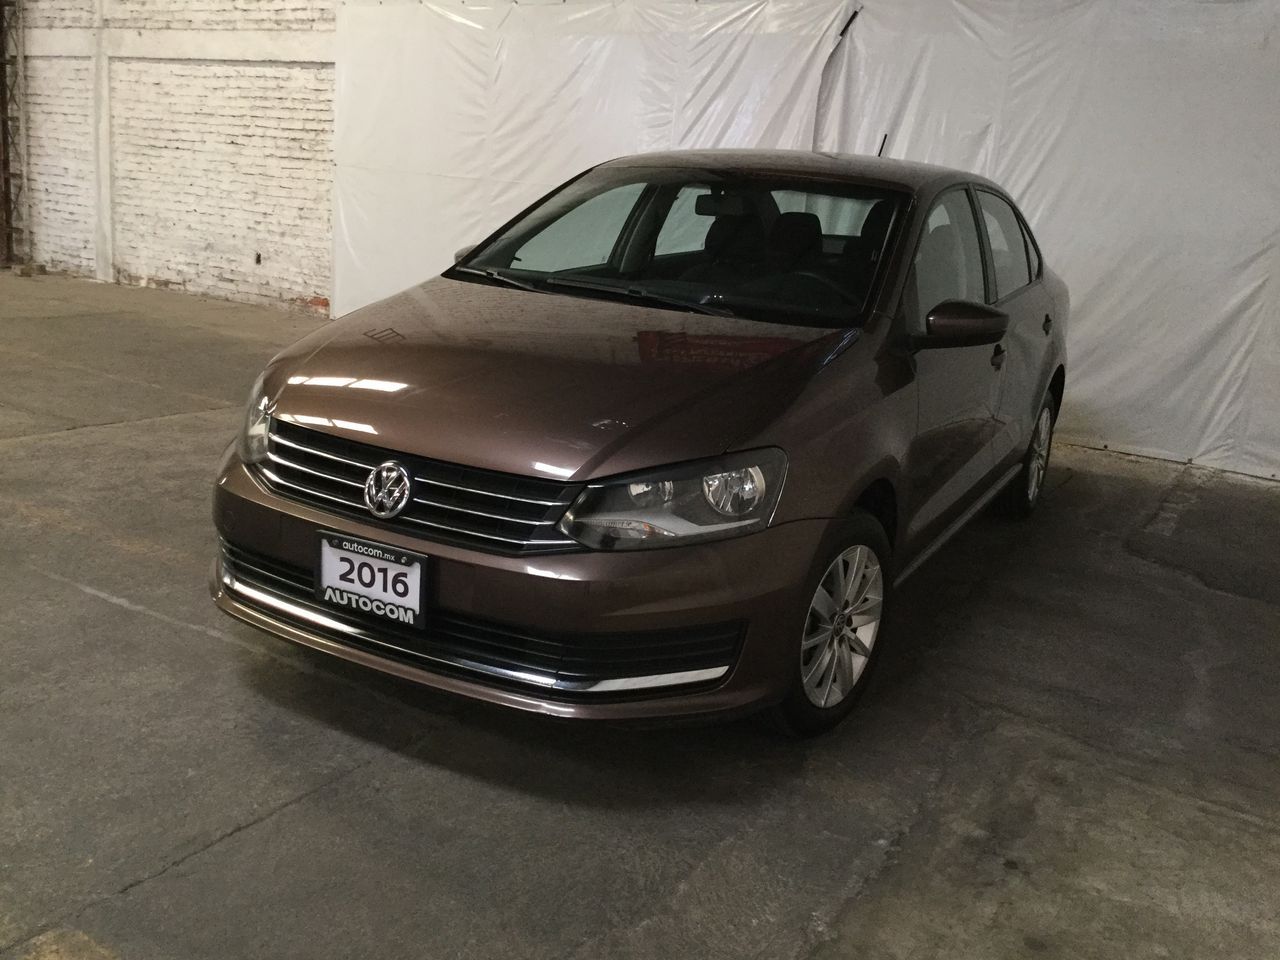 Volkswagen Vento 2016